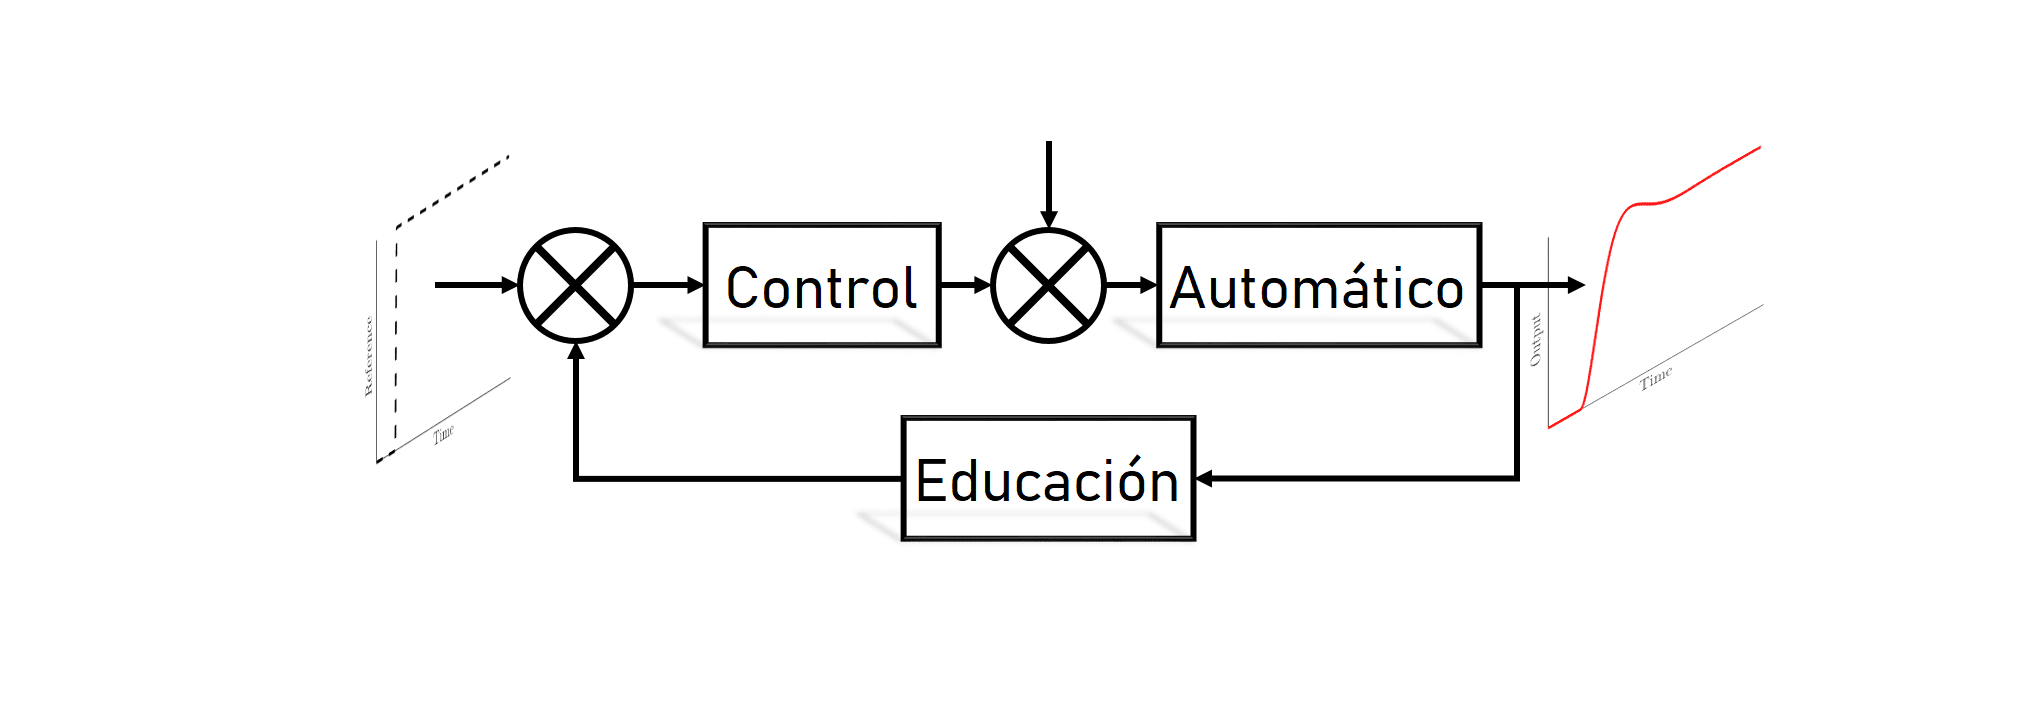 Control Automático Educación